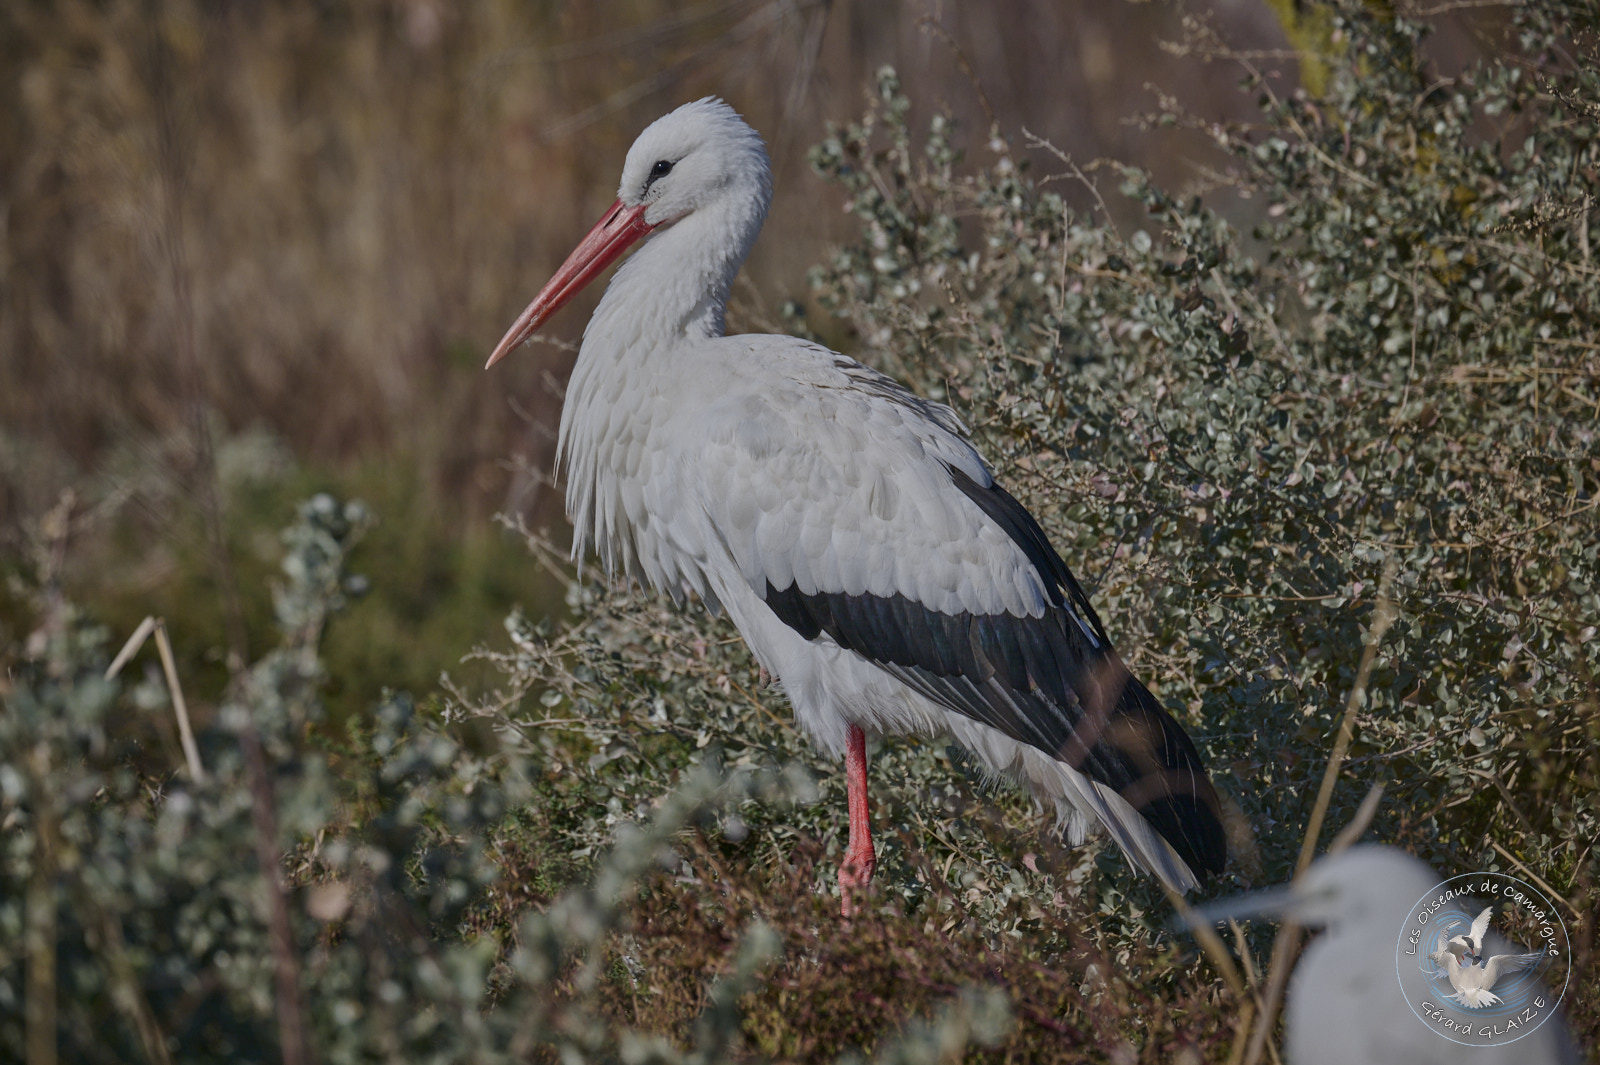 Cigogne blanche - White stork